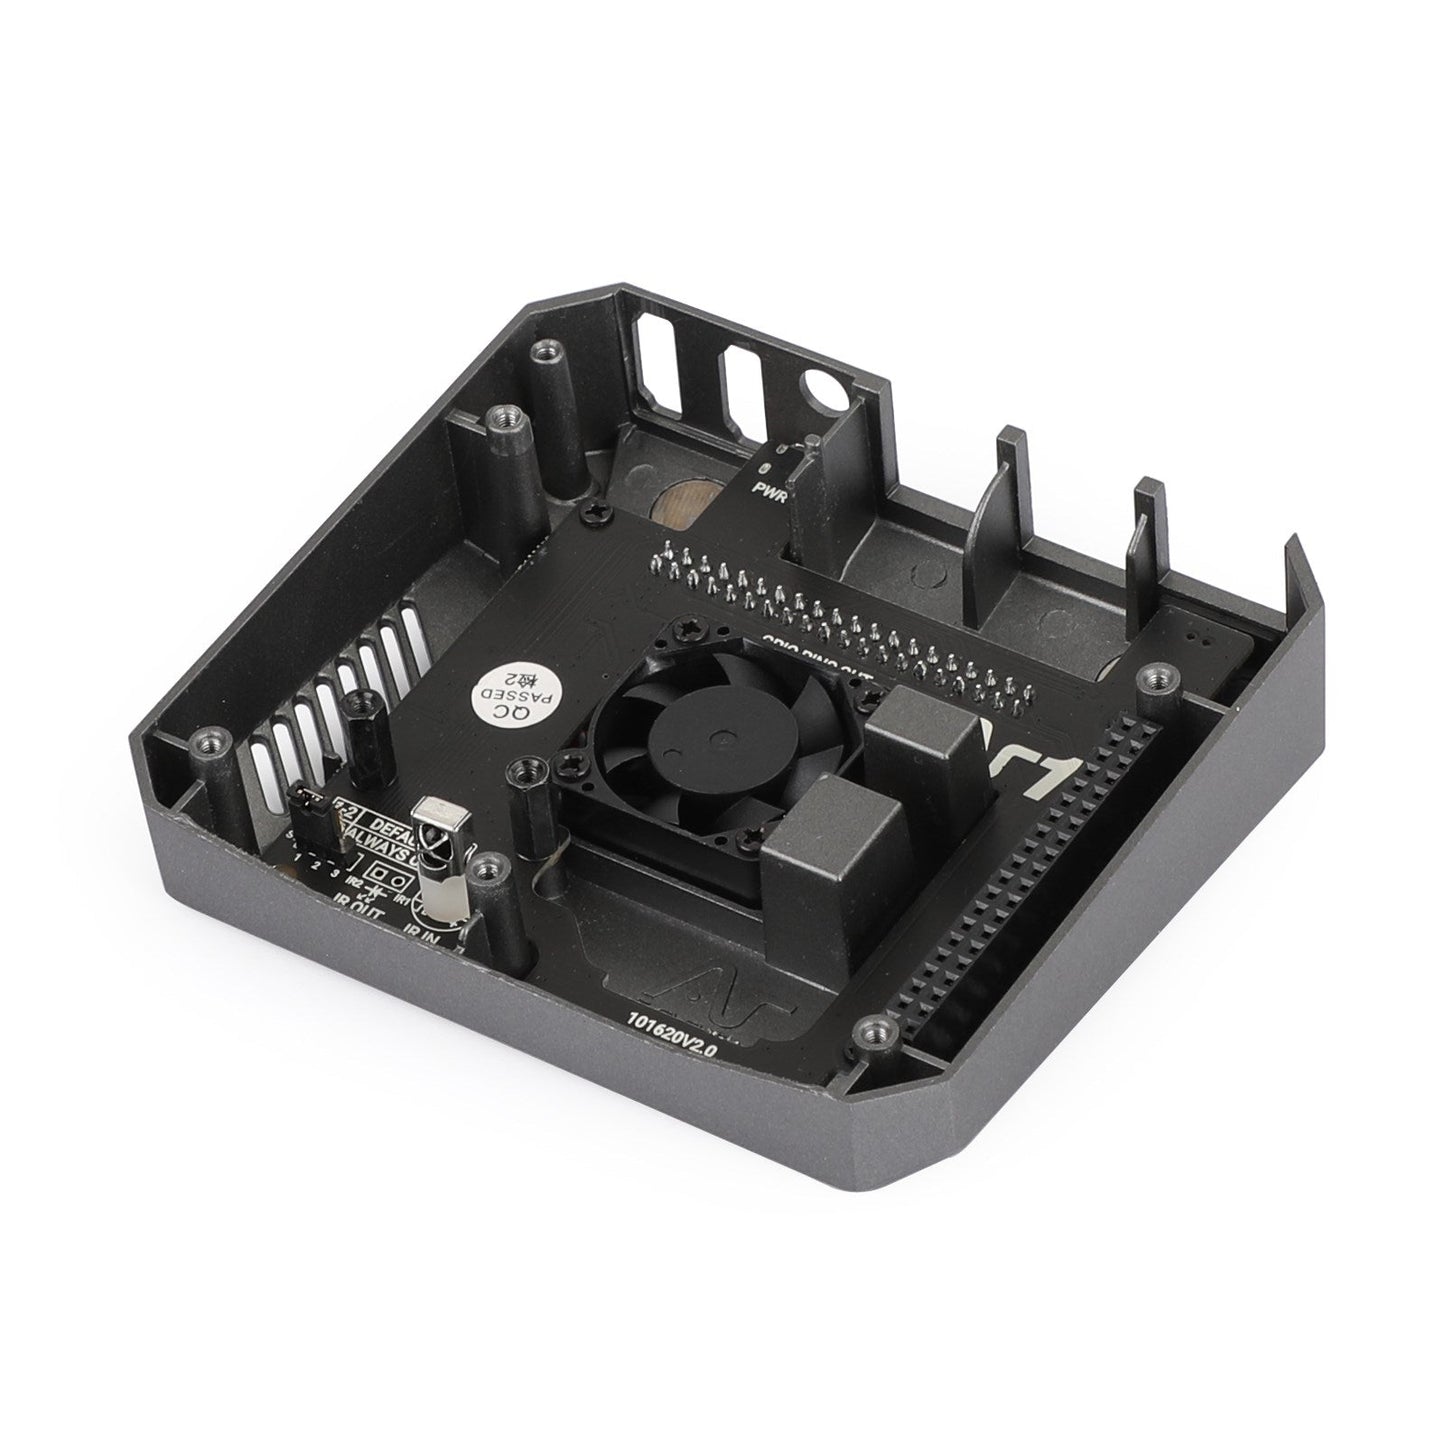 2021 Aluminiumgebüt für Raspberry Pi 4 MIT Safe Power Button für Argon eins